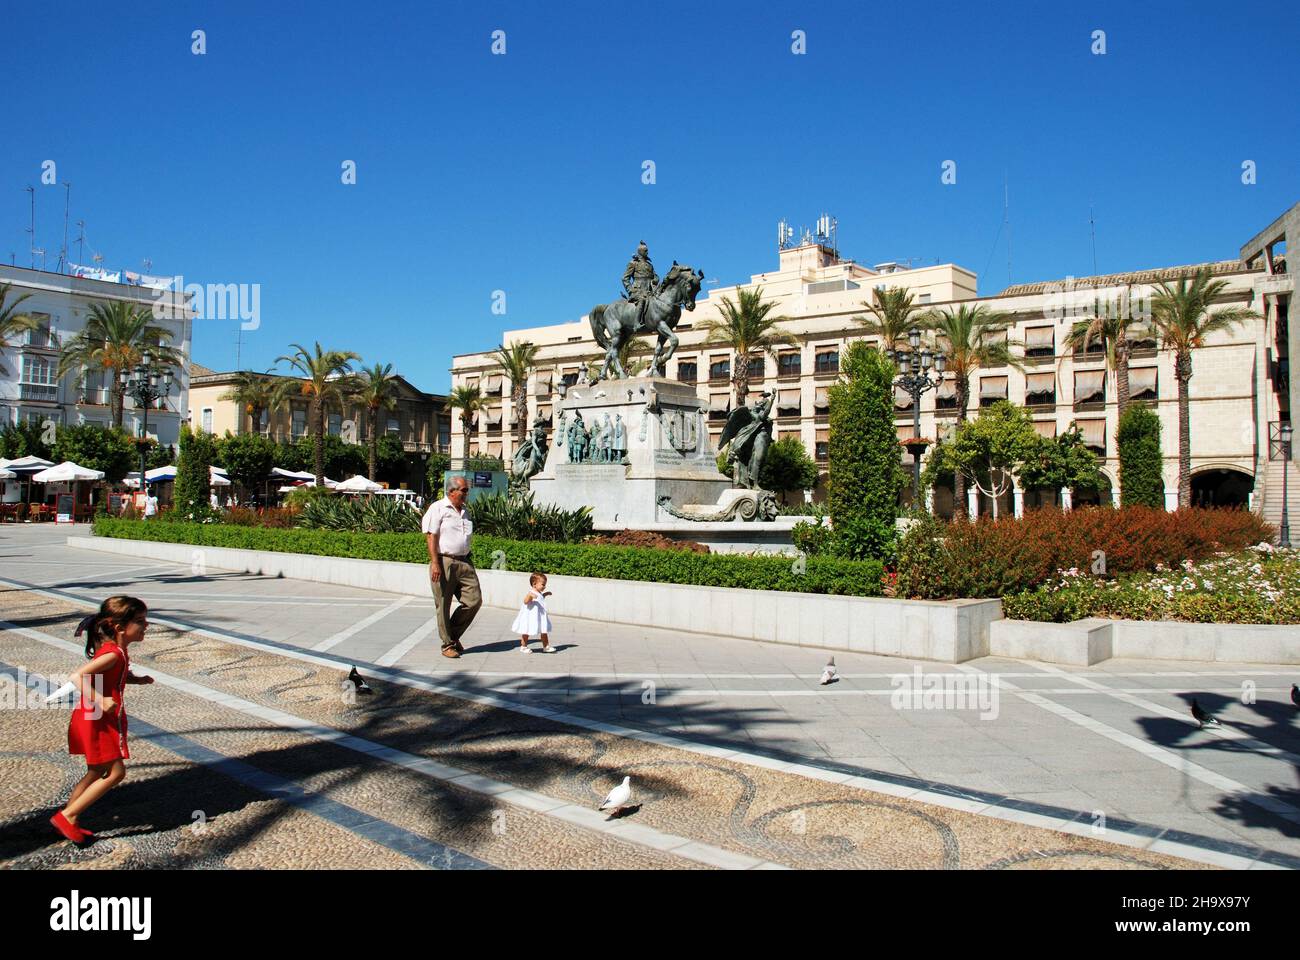 Denkmal auf der Plaza del Arenal und Kinder mit ihrem Großvater im Vordergrund, Jerez de la Frontera, Provinz Cadaz, Andalusien, Spanien. Stockfoto